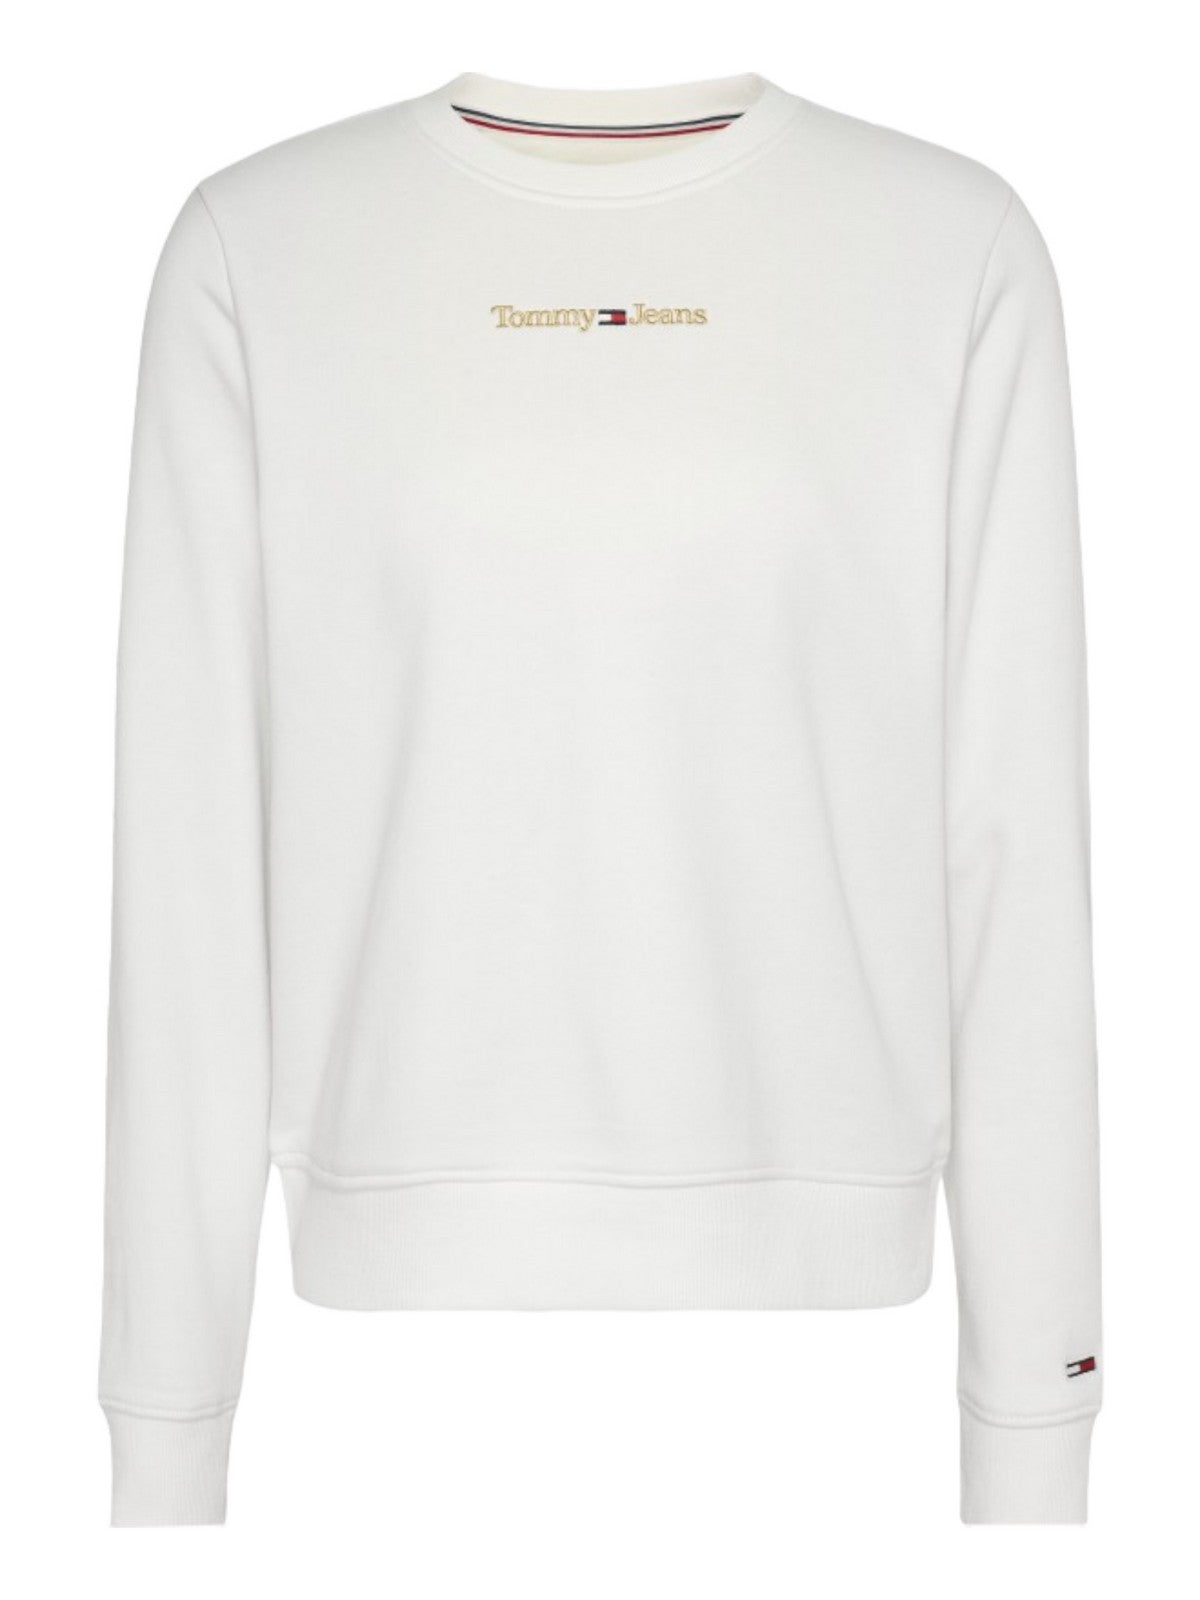 TOMMY HILFIGER Sweatshirt Femme DW0DW16931 YBR Blanc